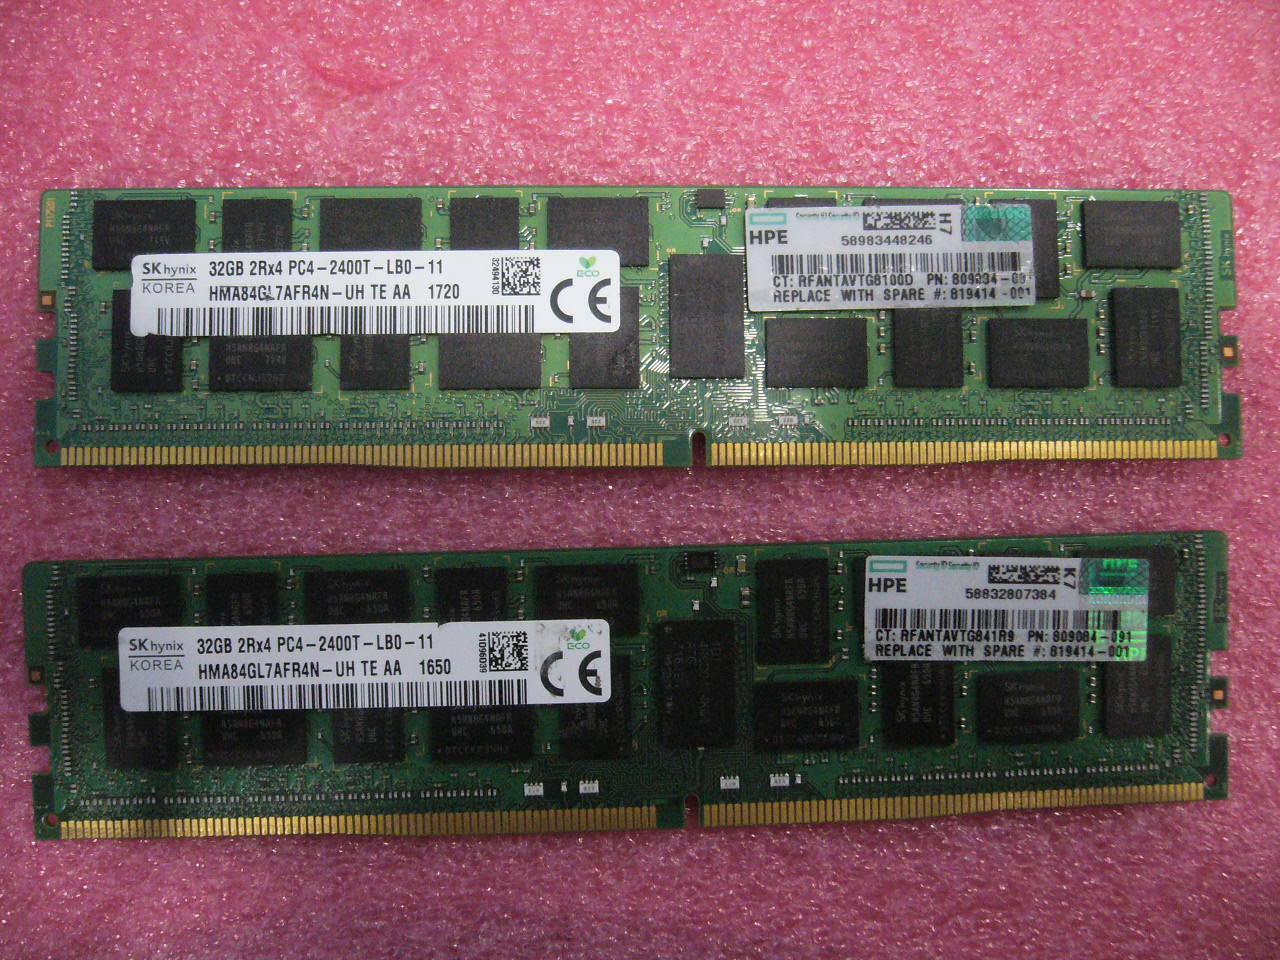 QTY 1x 32GB DDR4 2Rx4 PC4-2400T-LB0 ECC Registered memory SK Hynix HP 809084-091